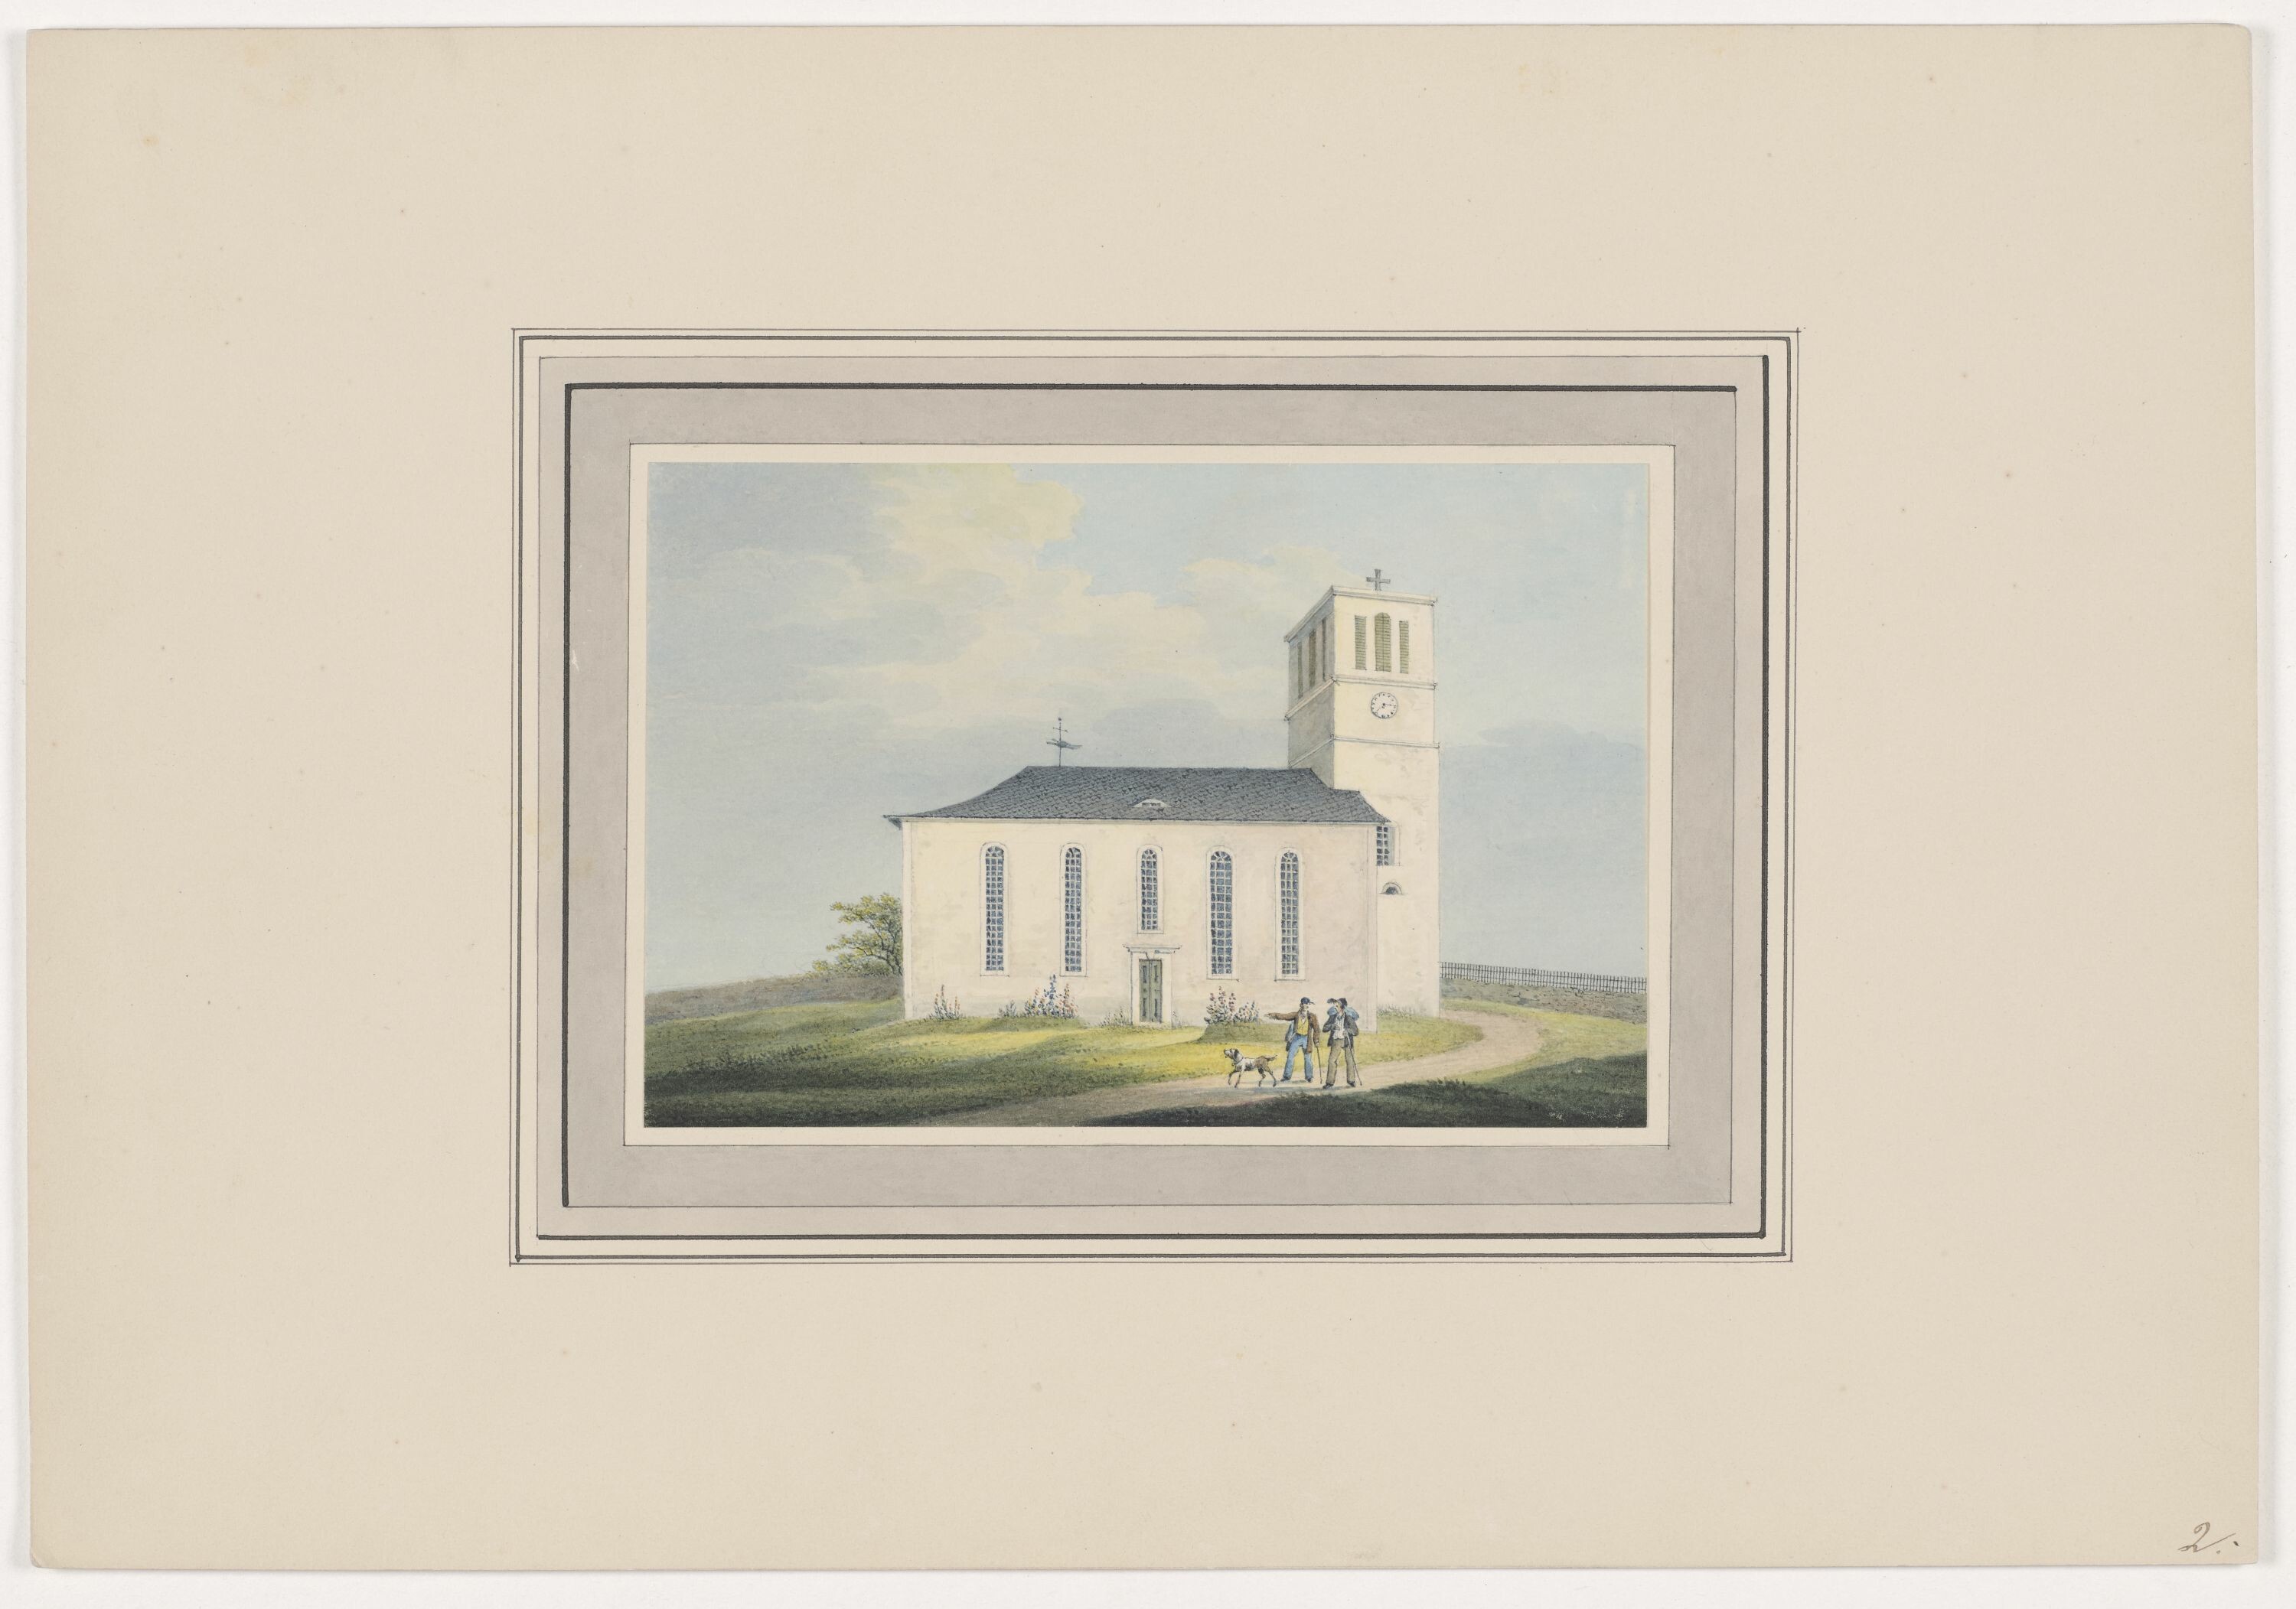 Kirche zu Mosel, aus Mappe: Dorfkirchen der Ephorie Zwickau, Blatt 2 (KUNSTSAMMLUNGEN ZWICKAU Max-Pechstein-Museum RR-F)